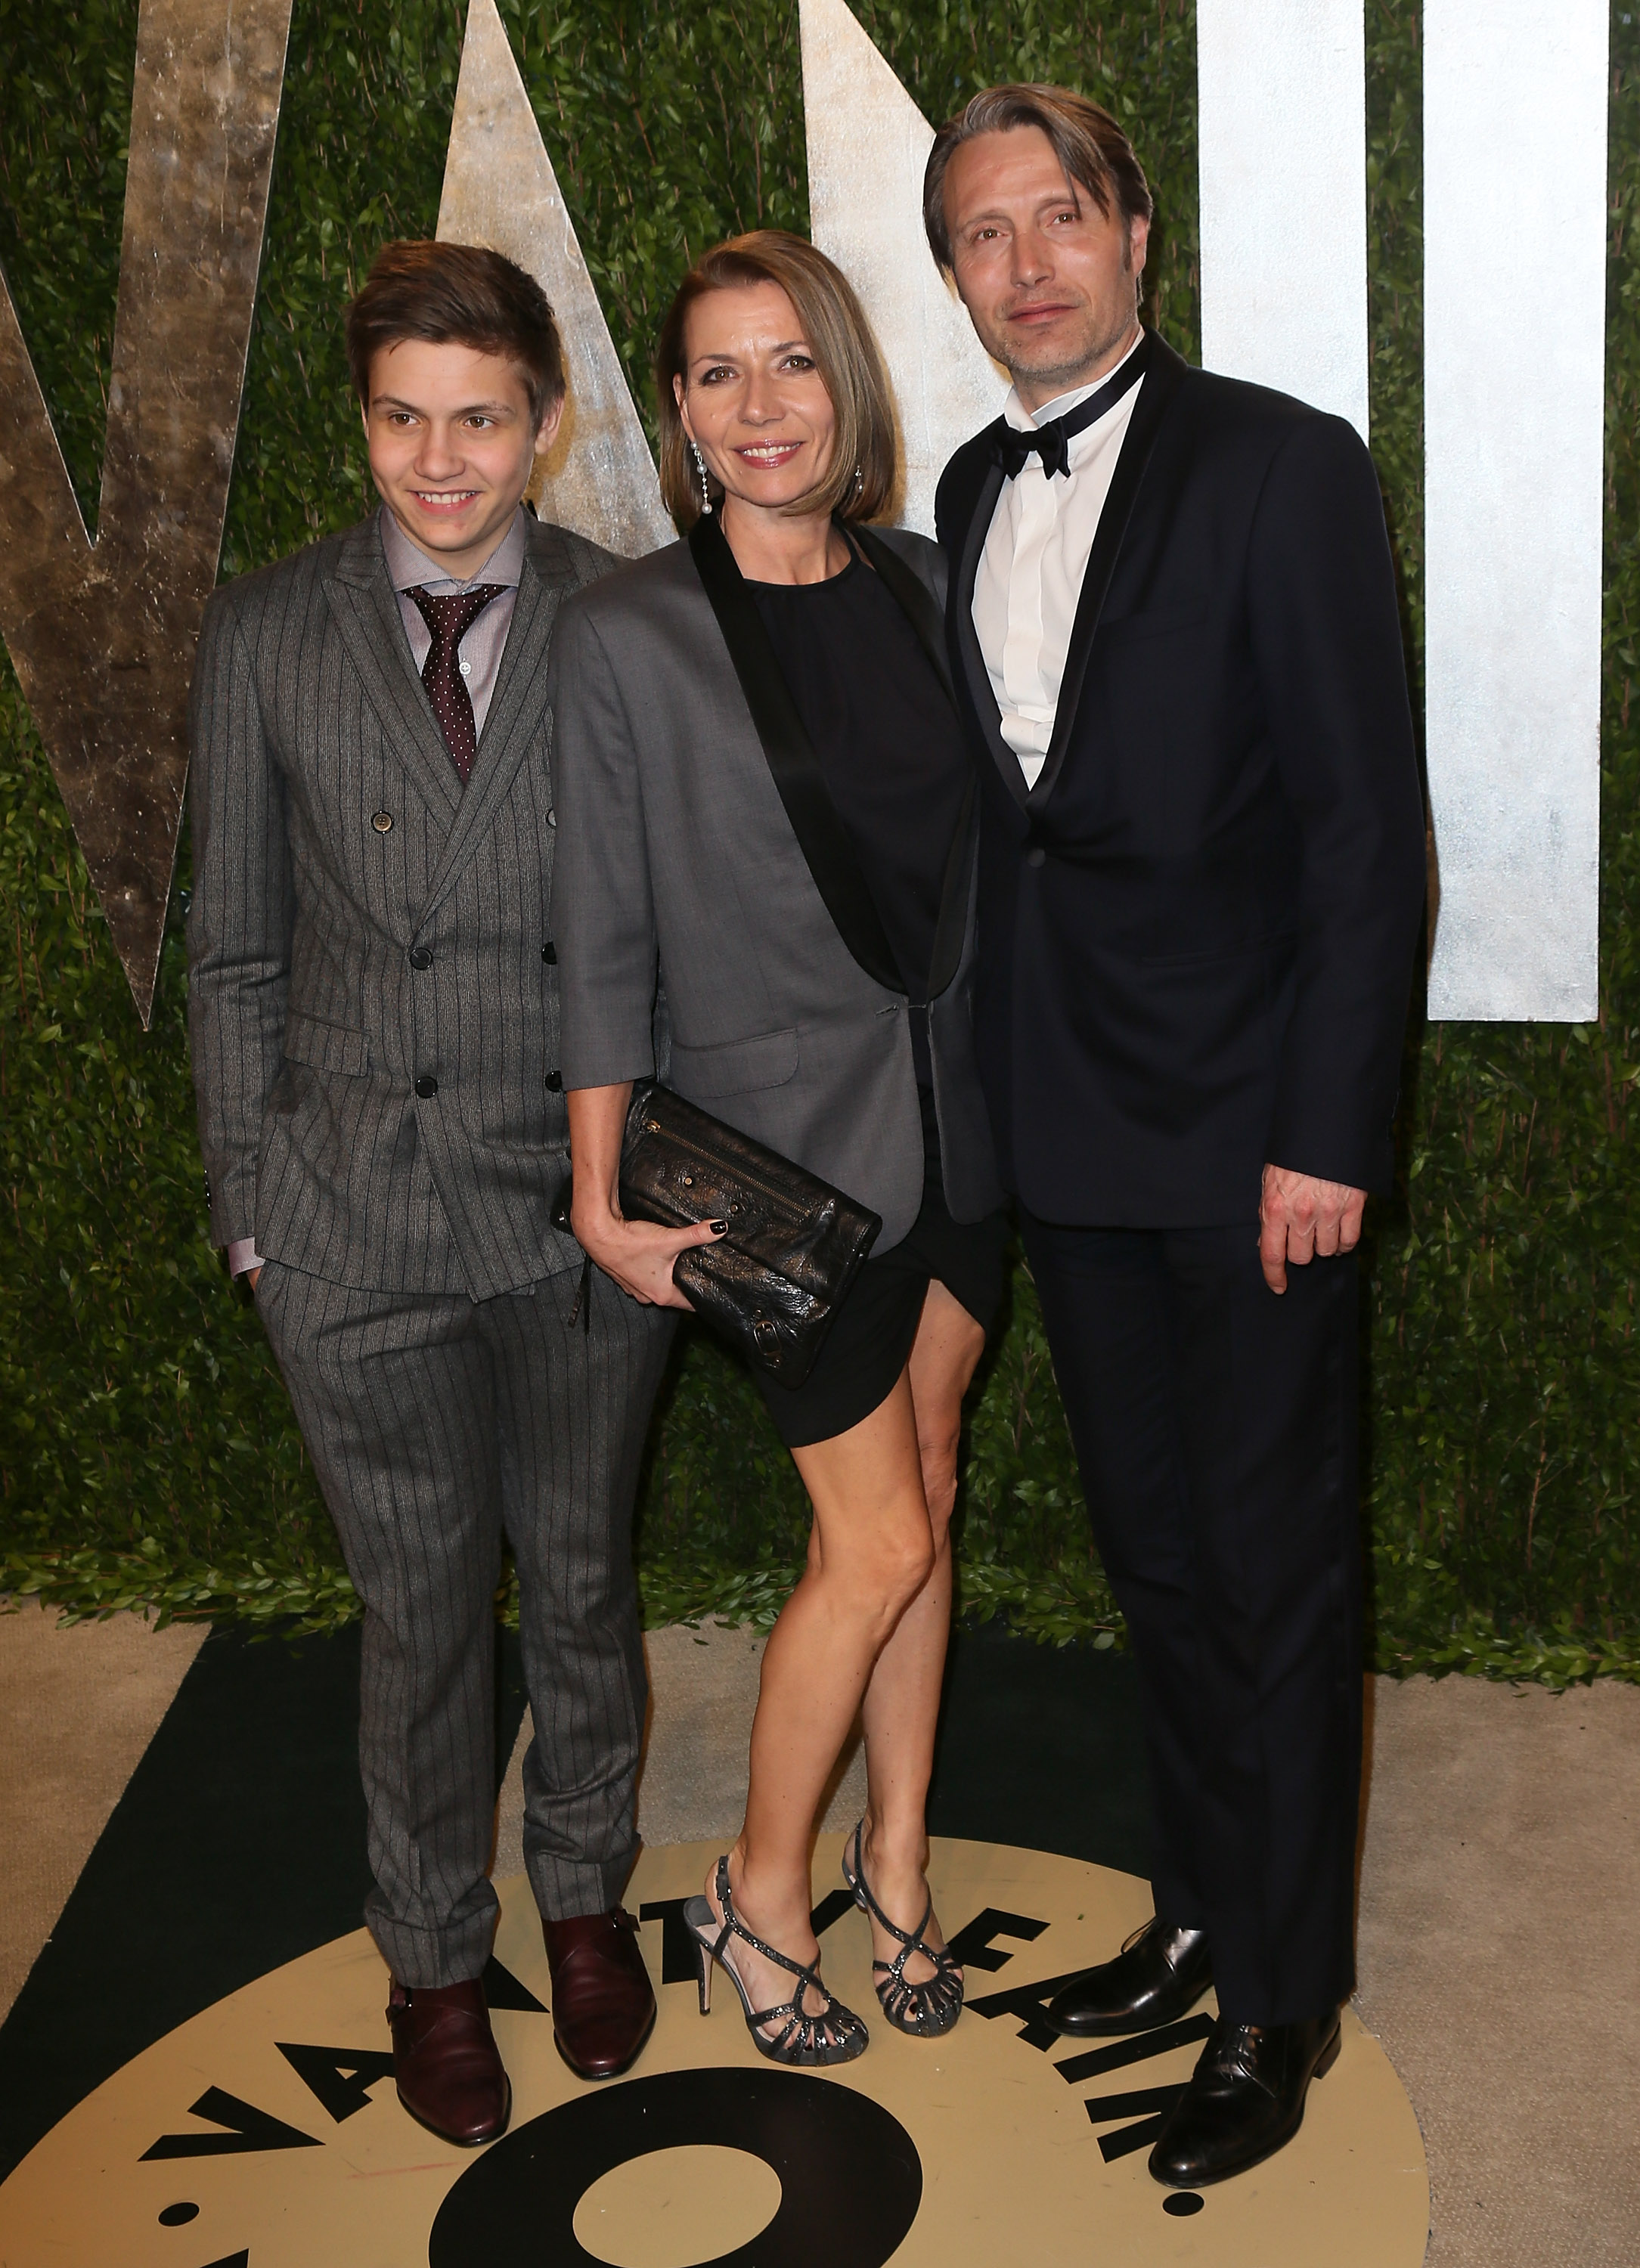 Mads Mikkelsen, Carl Mikkelsen und Hanne Jacobsen auf der Vanity Fair Oscar Party am 24. Februar 2013 in Kalifornien. | Quelle: Getty Images